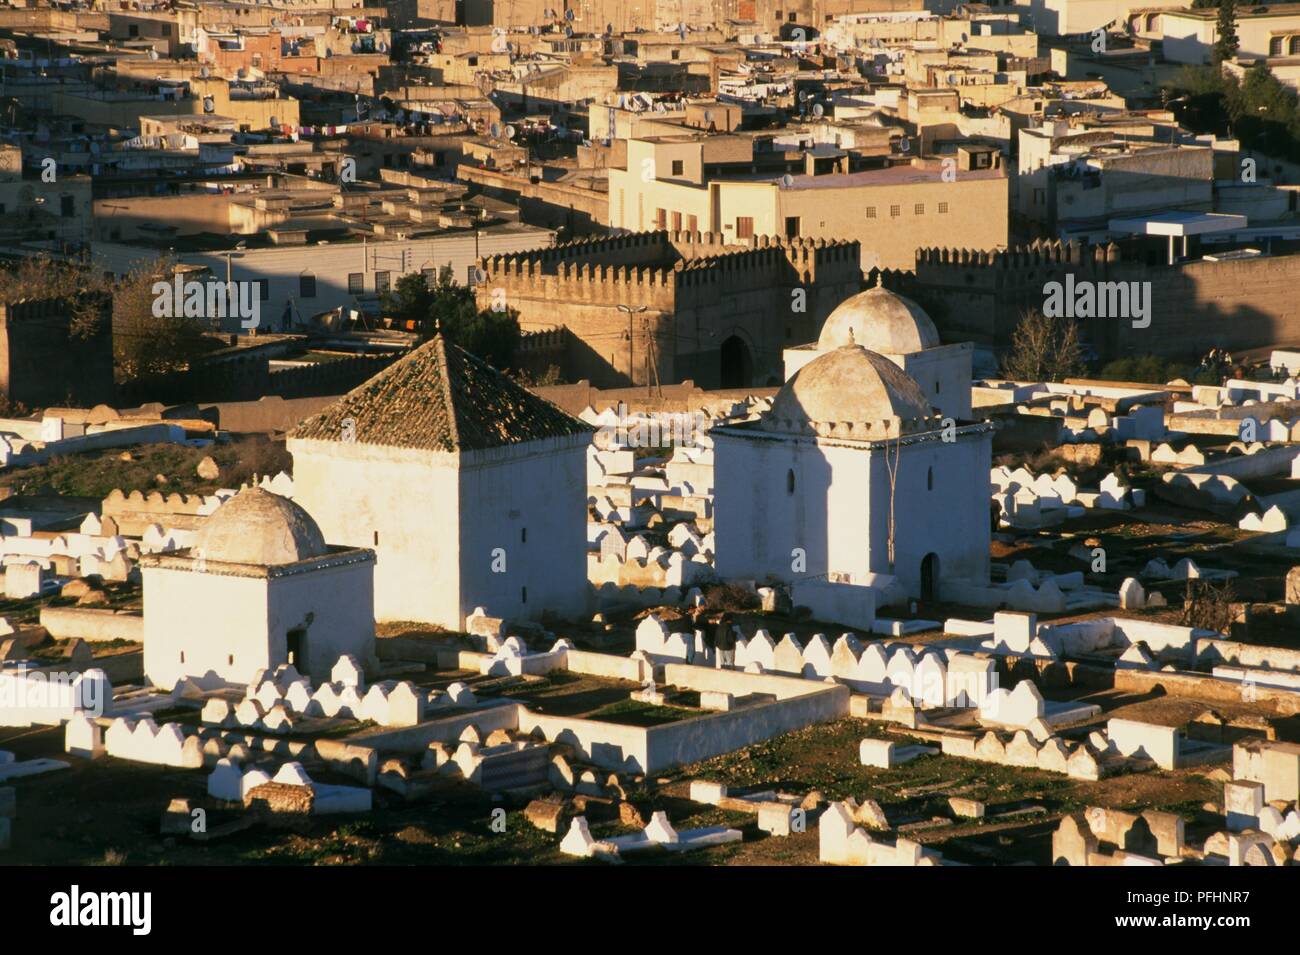 Marokko, Fes, Bab el-ftouh Friedhof und die Stadt. Stockfoto